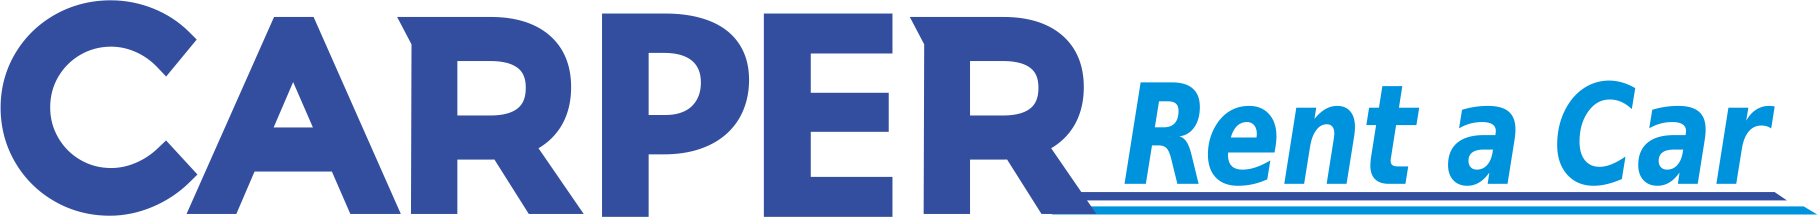 Logo Carper Rent a Car